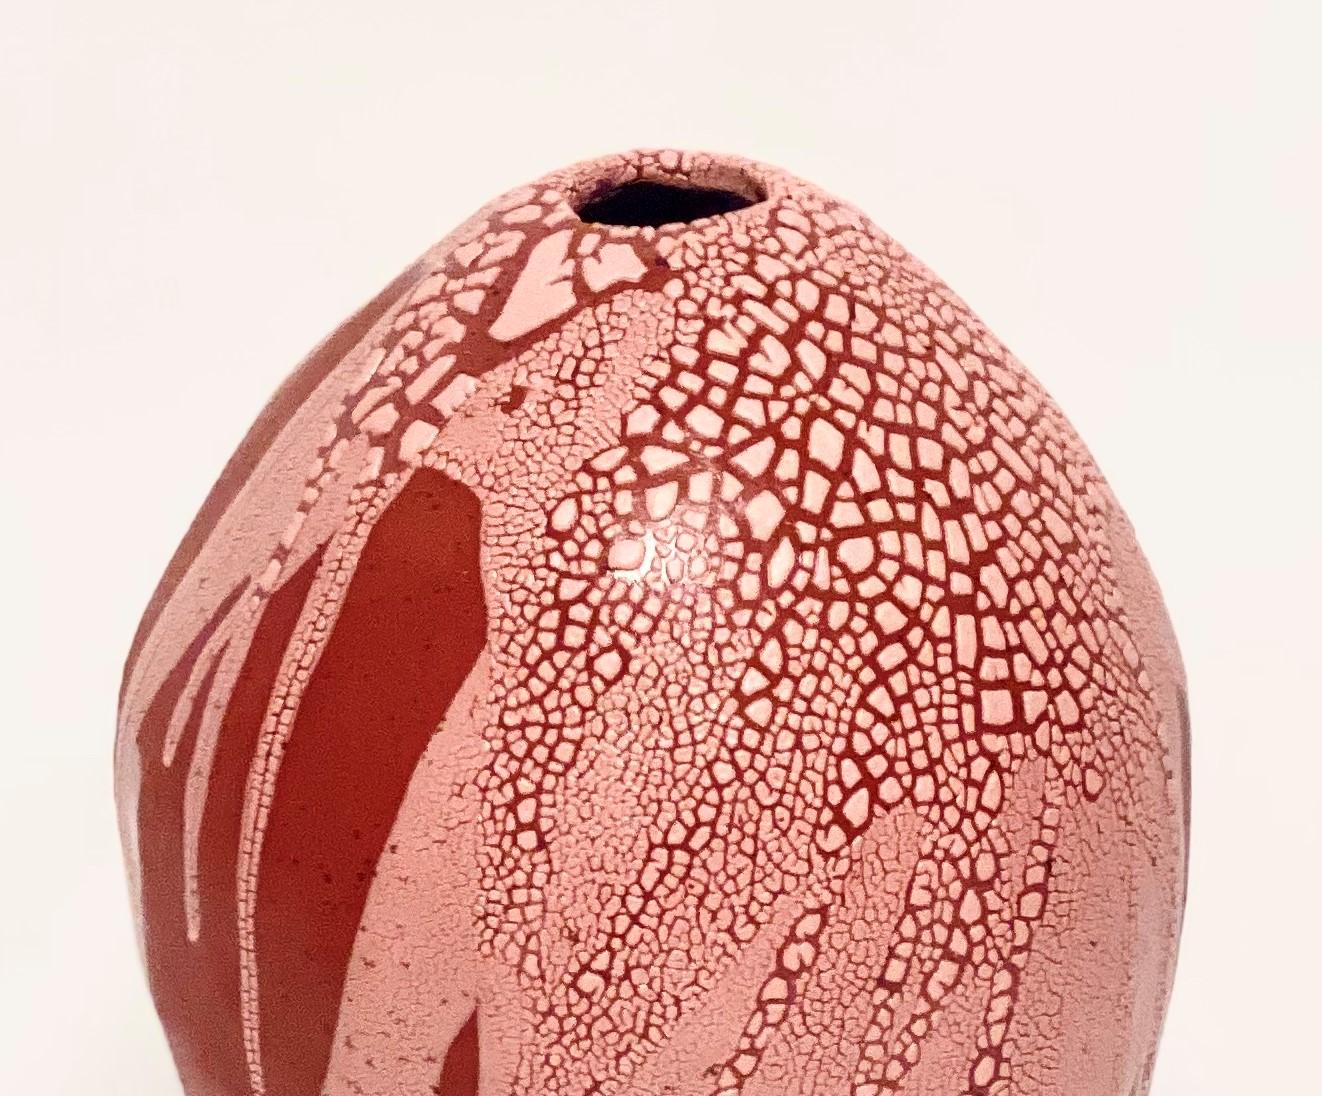 Glazed Red/Pink Dragon Egg Vase by Astrid Öhman For Sale